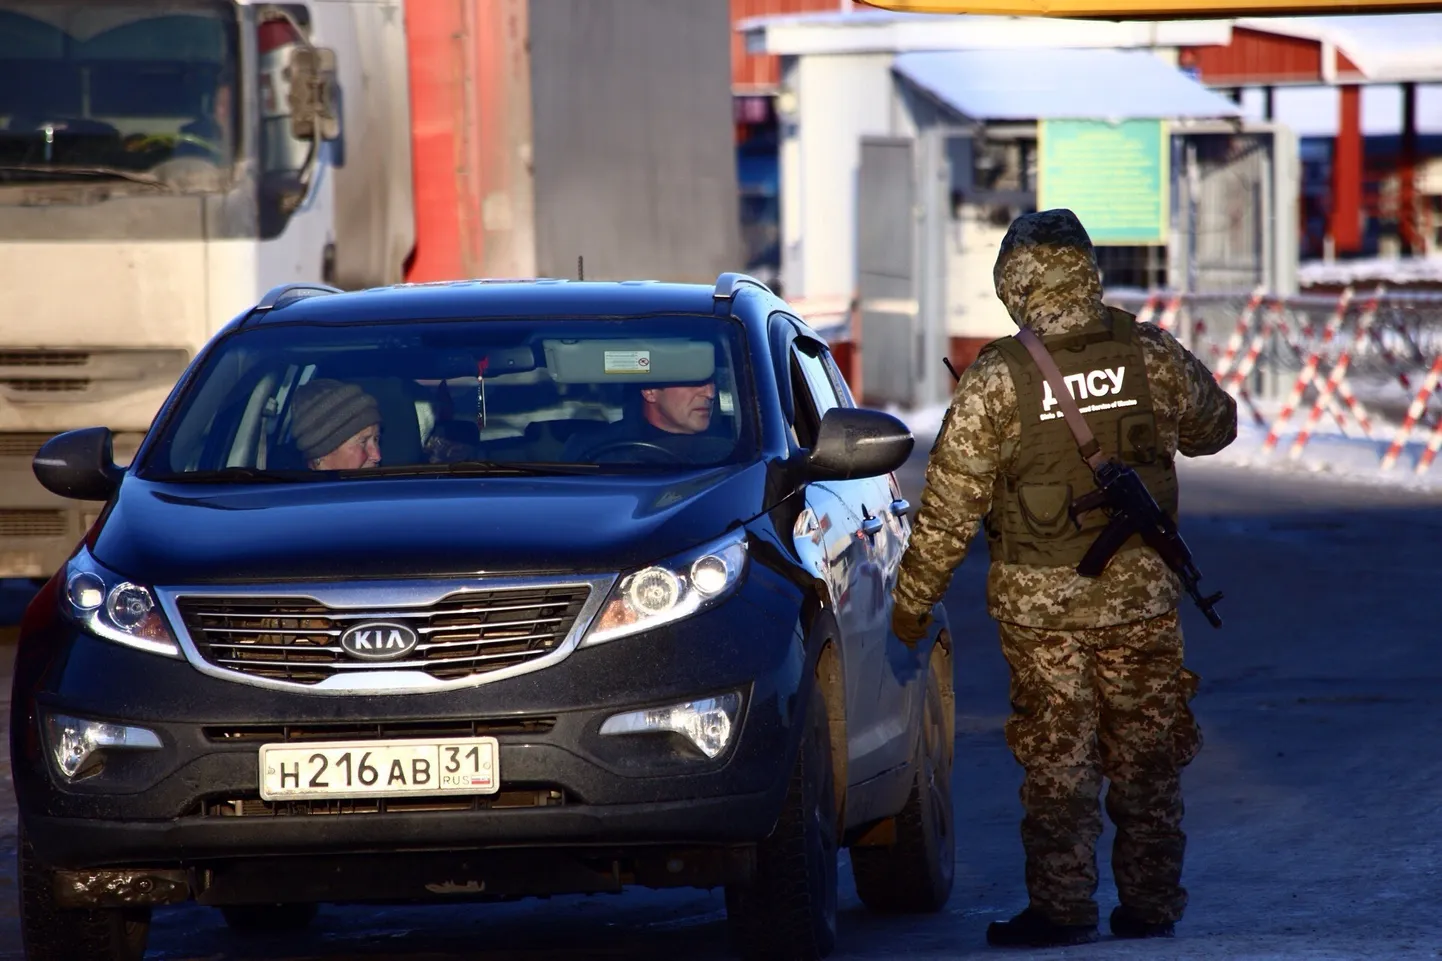 Украинский пограничник остановил автомобиль с российскими номерами.